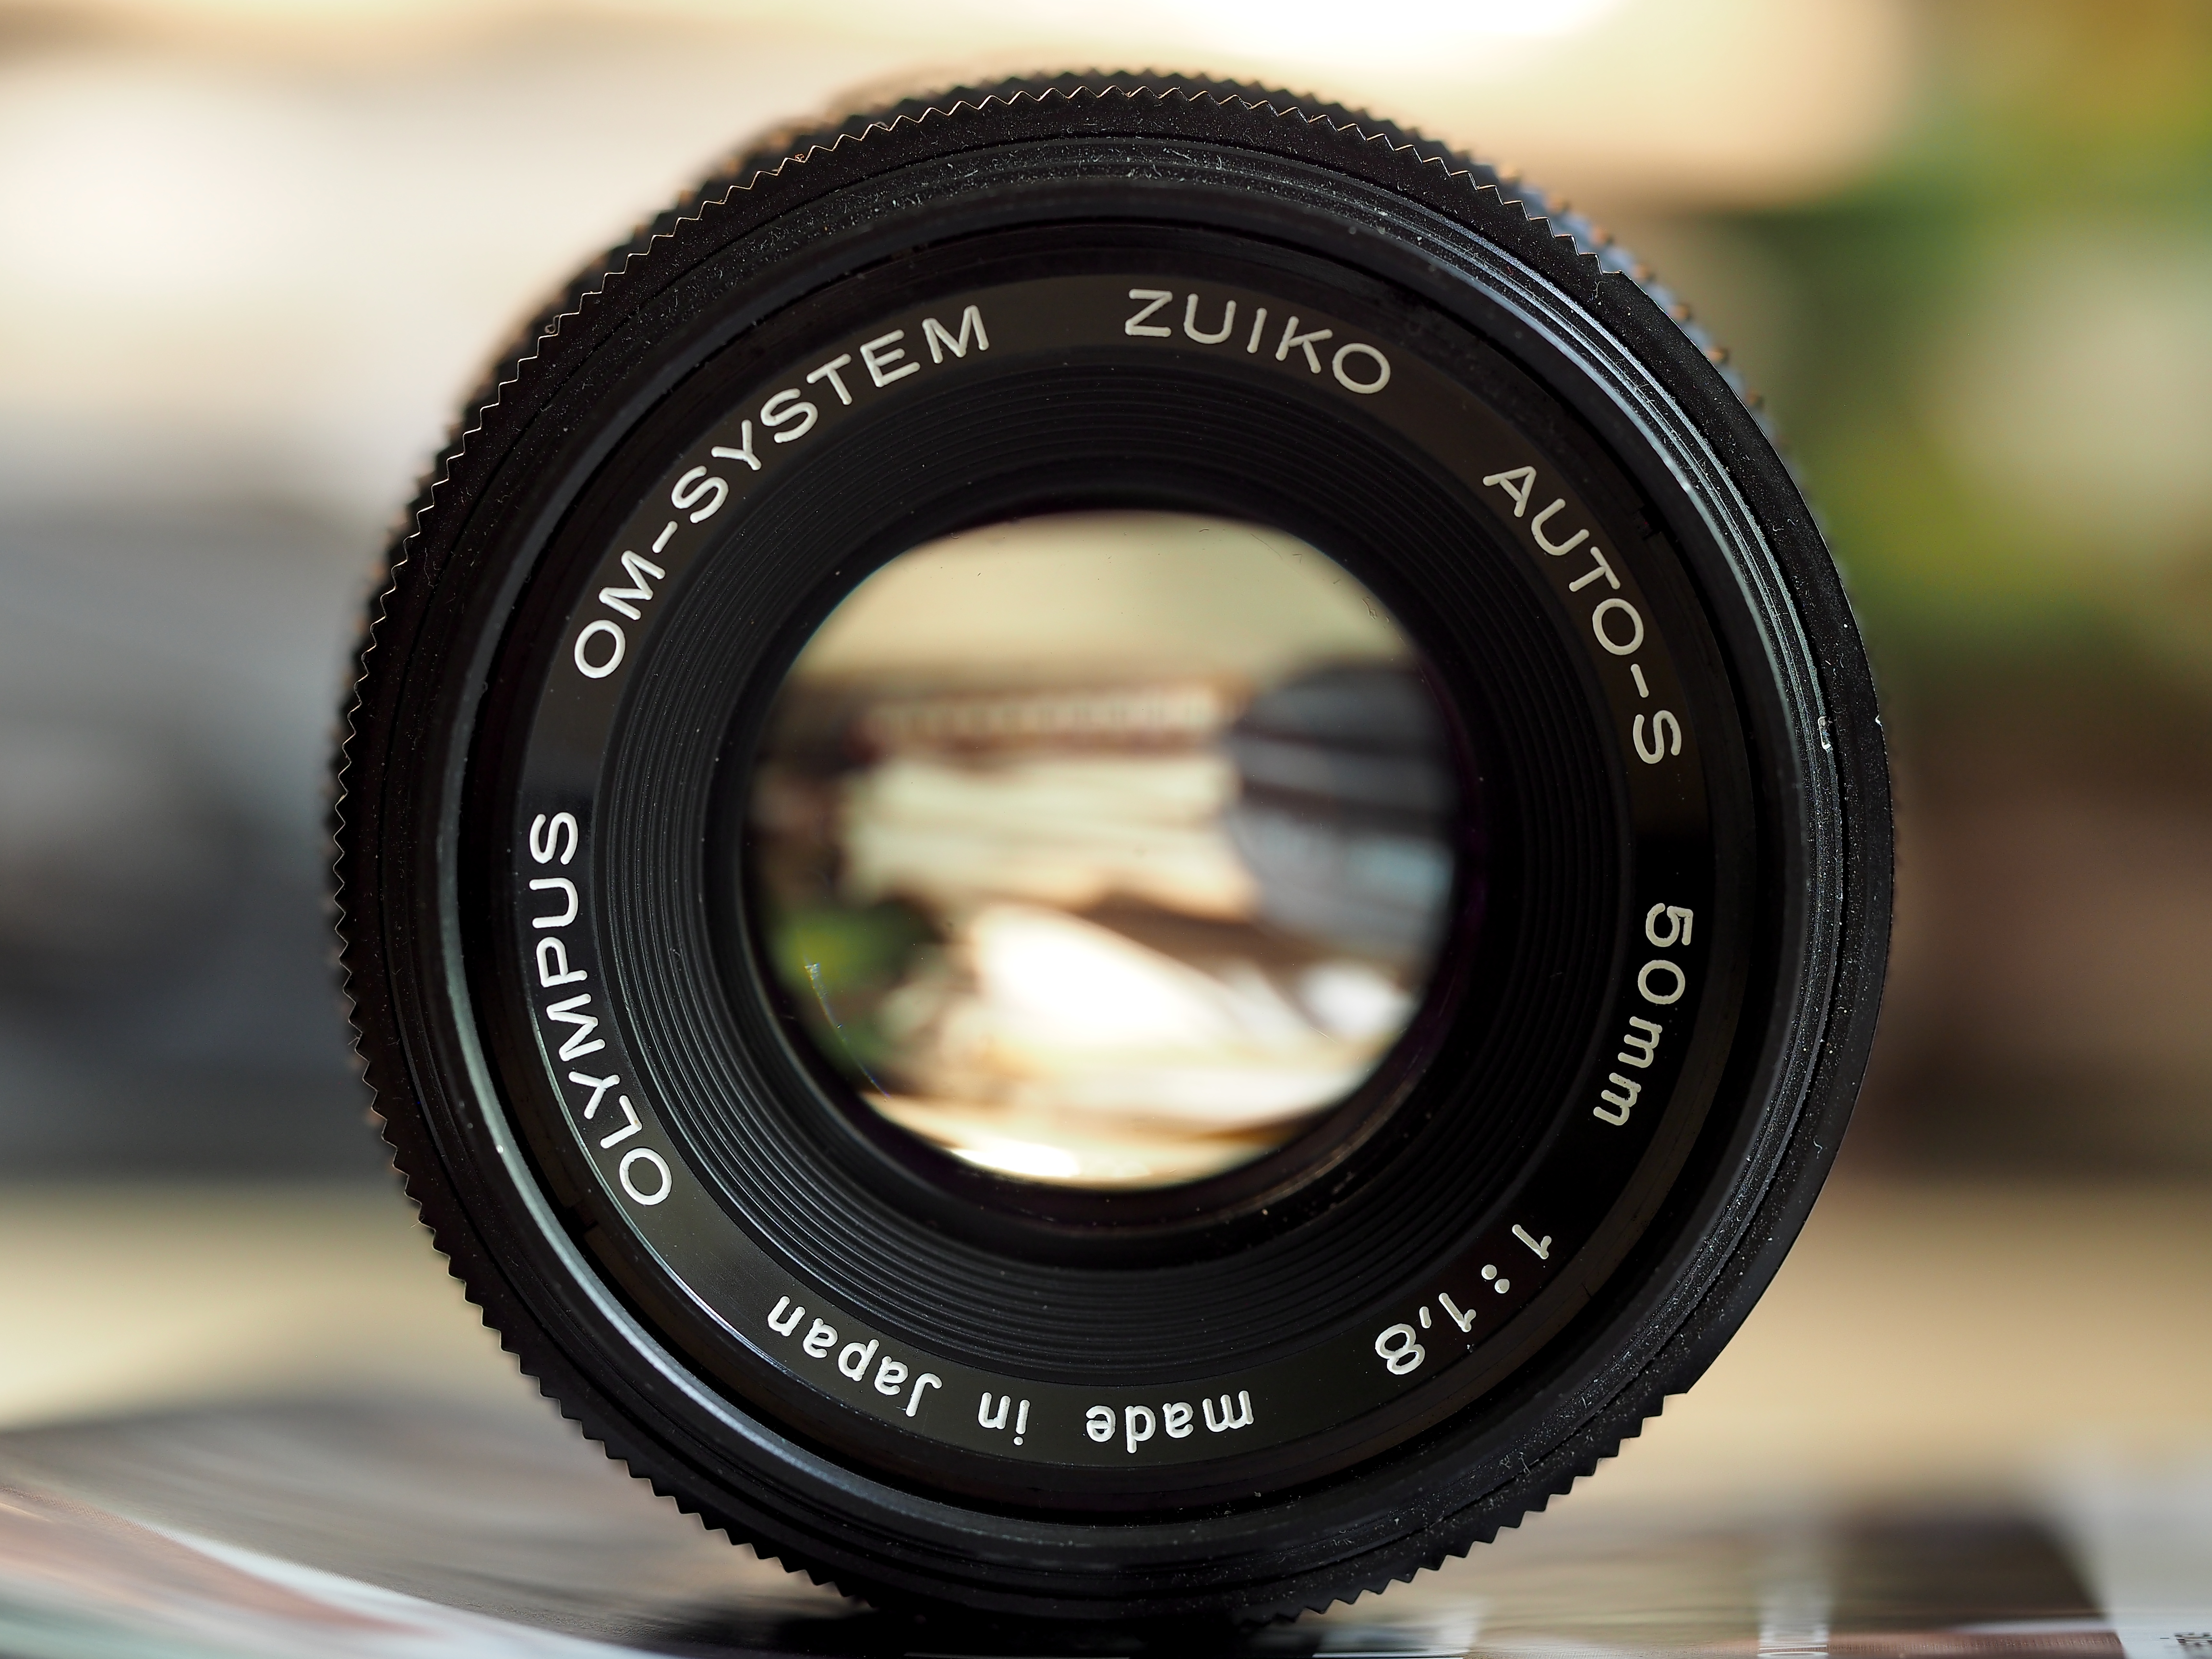 Olympus Zuiko OM 50 mm wide open